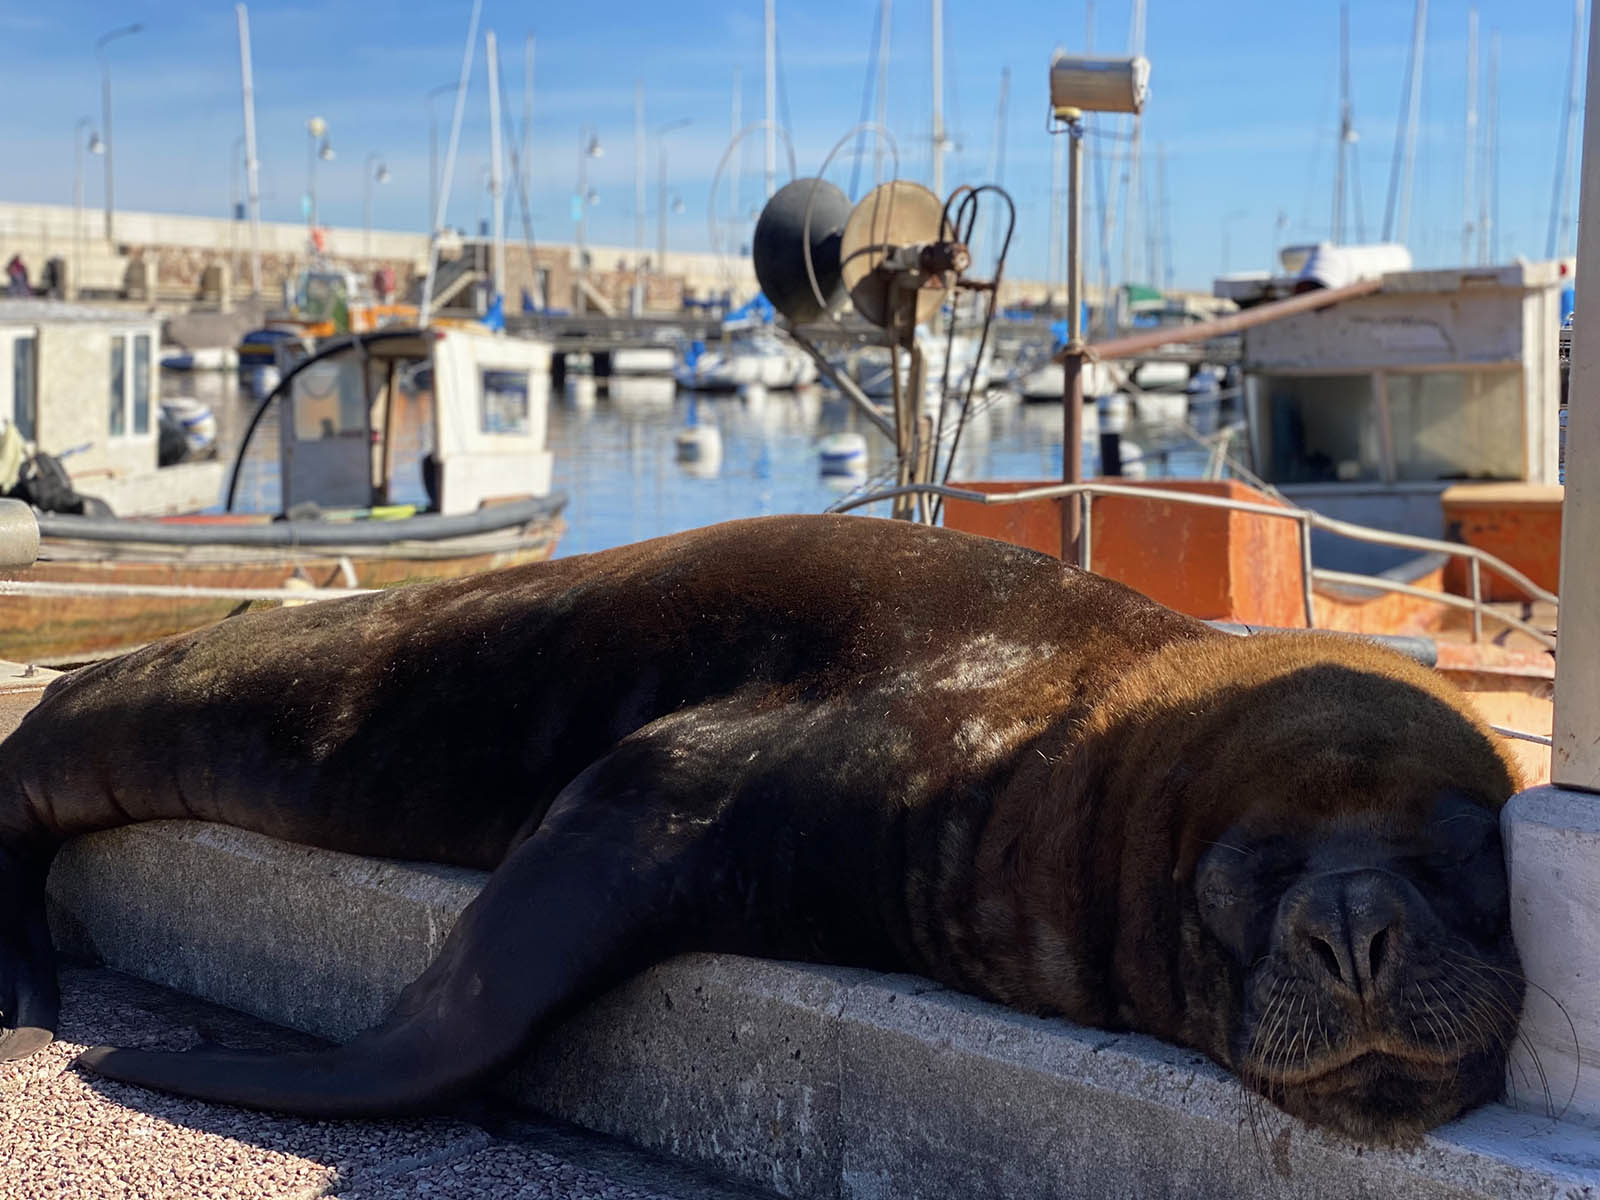 Sea lion in the Piriapolis harbor. Credit: Christian Bergara